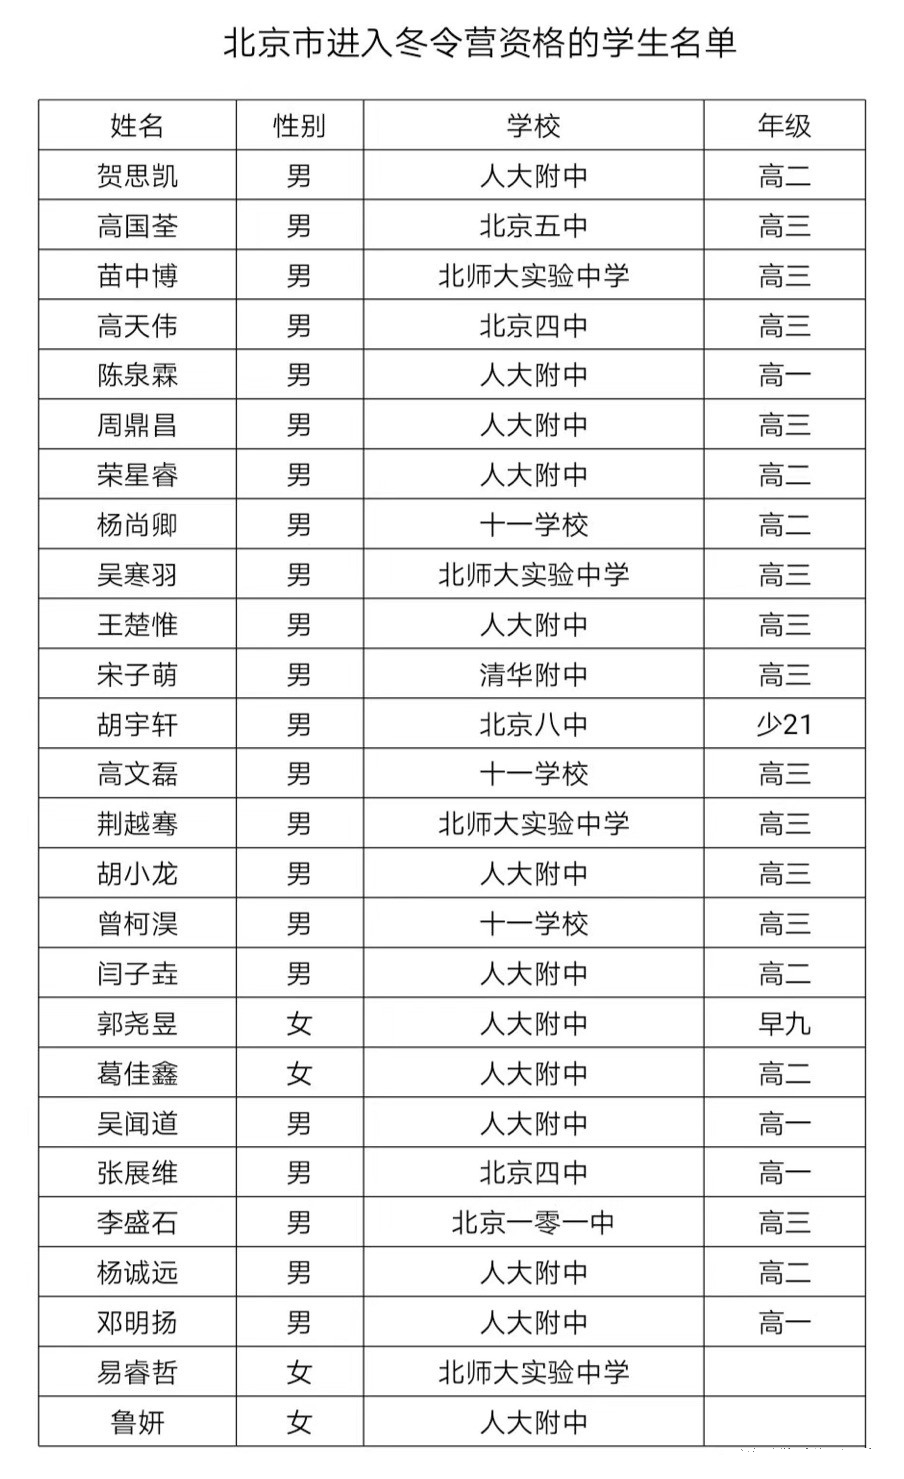 北京市2018年第34届全国中学生数学联赛省队名单